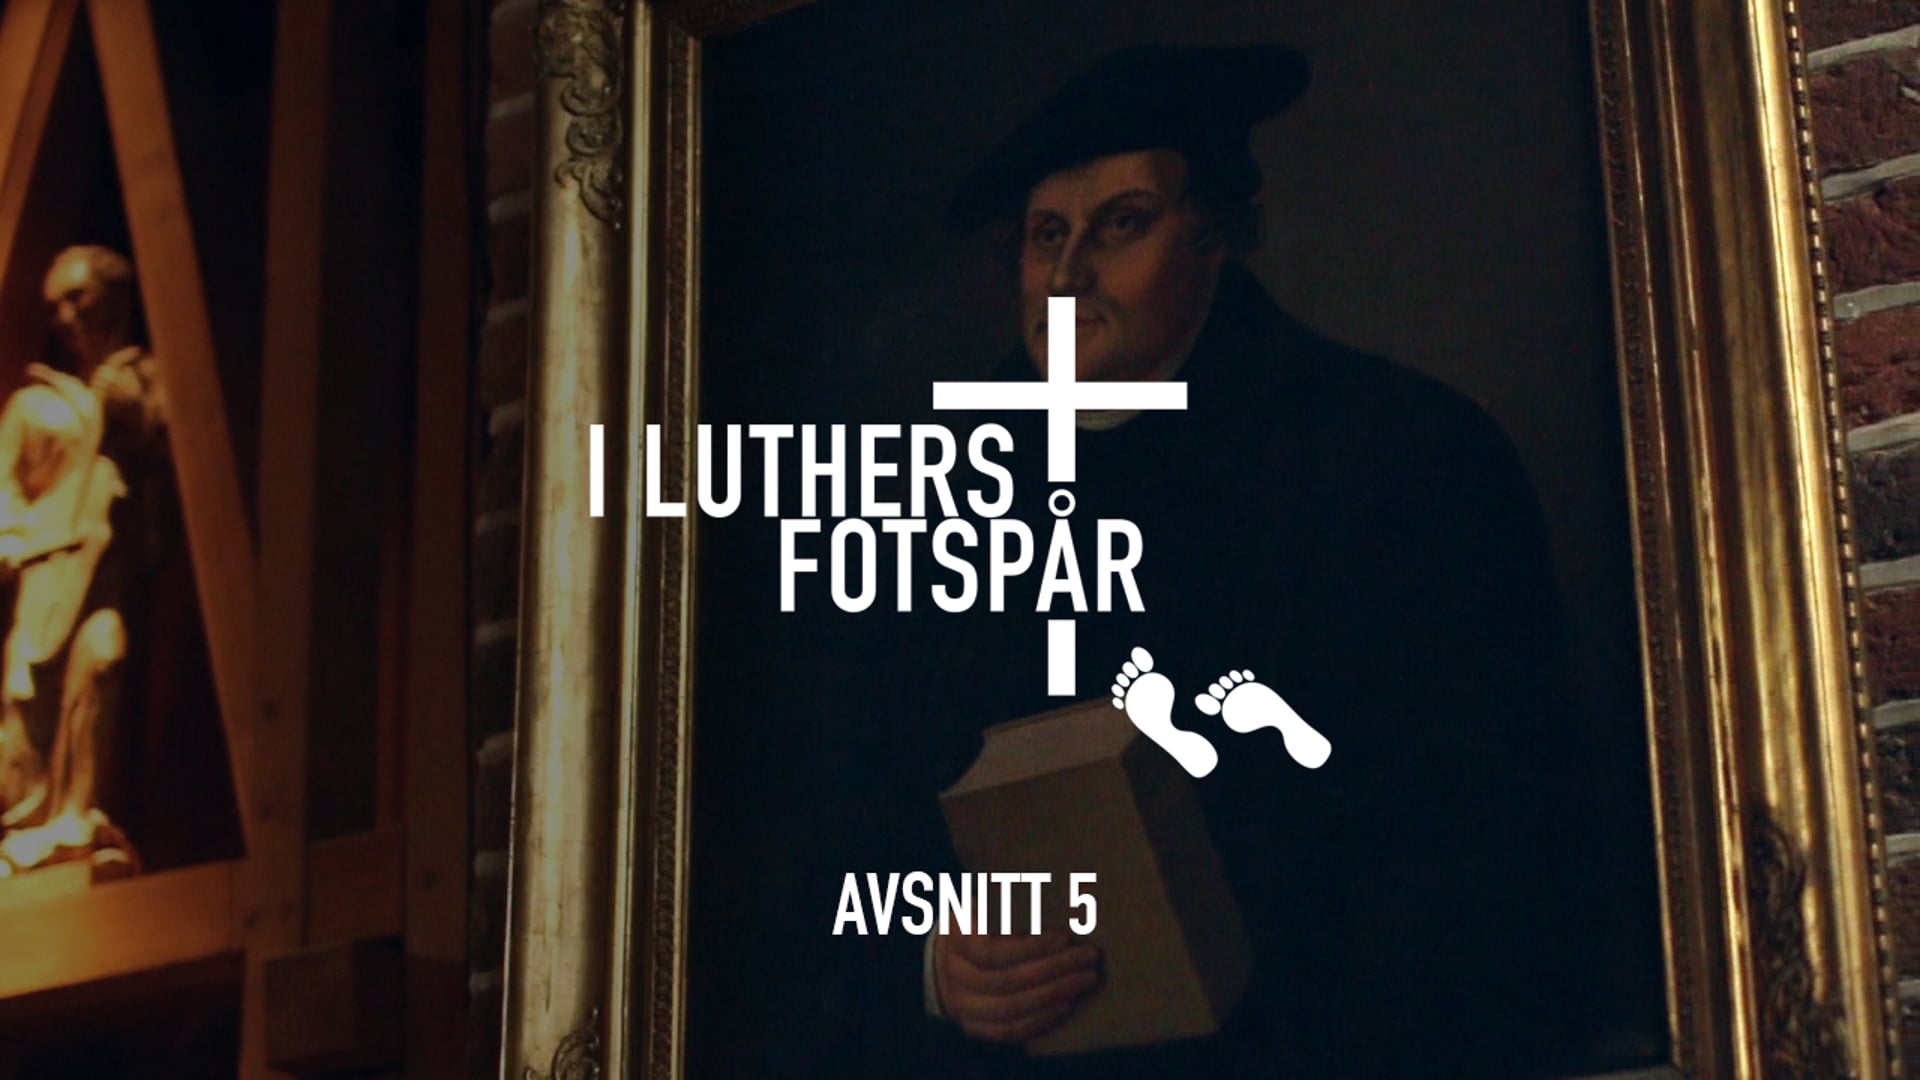 I Luthers fotspår – Avsnitt 5